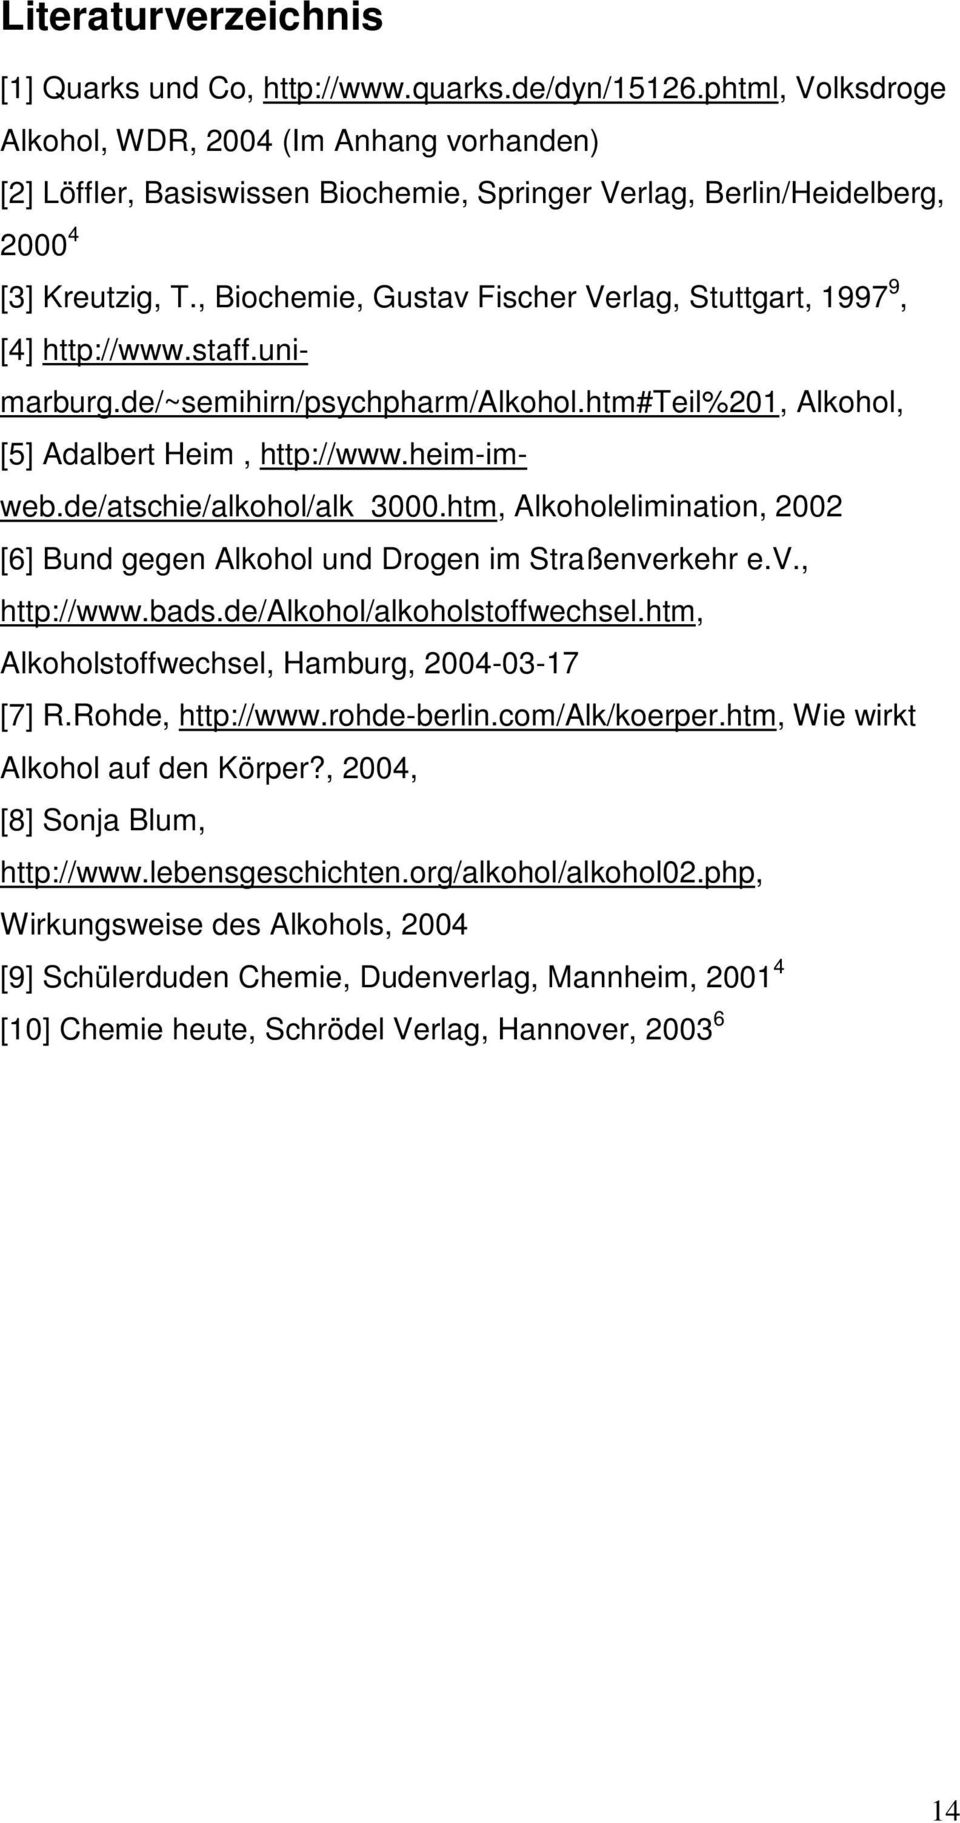 , Biochemie, Gustav Fischer Verlag, Stuttgart, 1997 9, [4] http://www.staff.unimarburg.de/~semihirn/psychpharm/alkohol.htm#teil%201, Alkohol, [5] Adalbert Heim, http://www.heim-imweb.